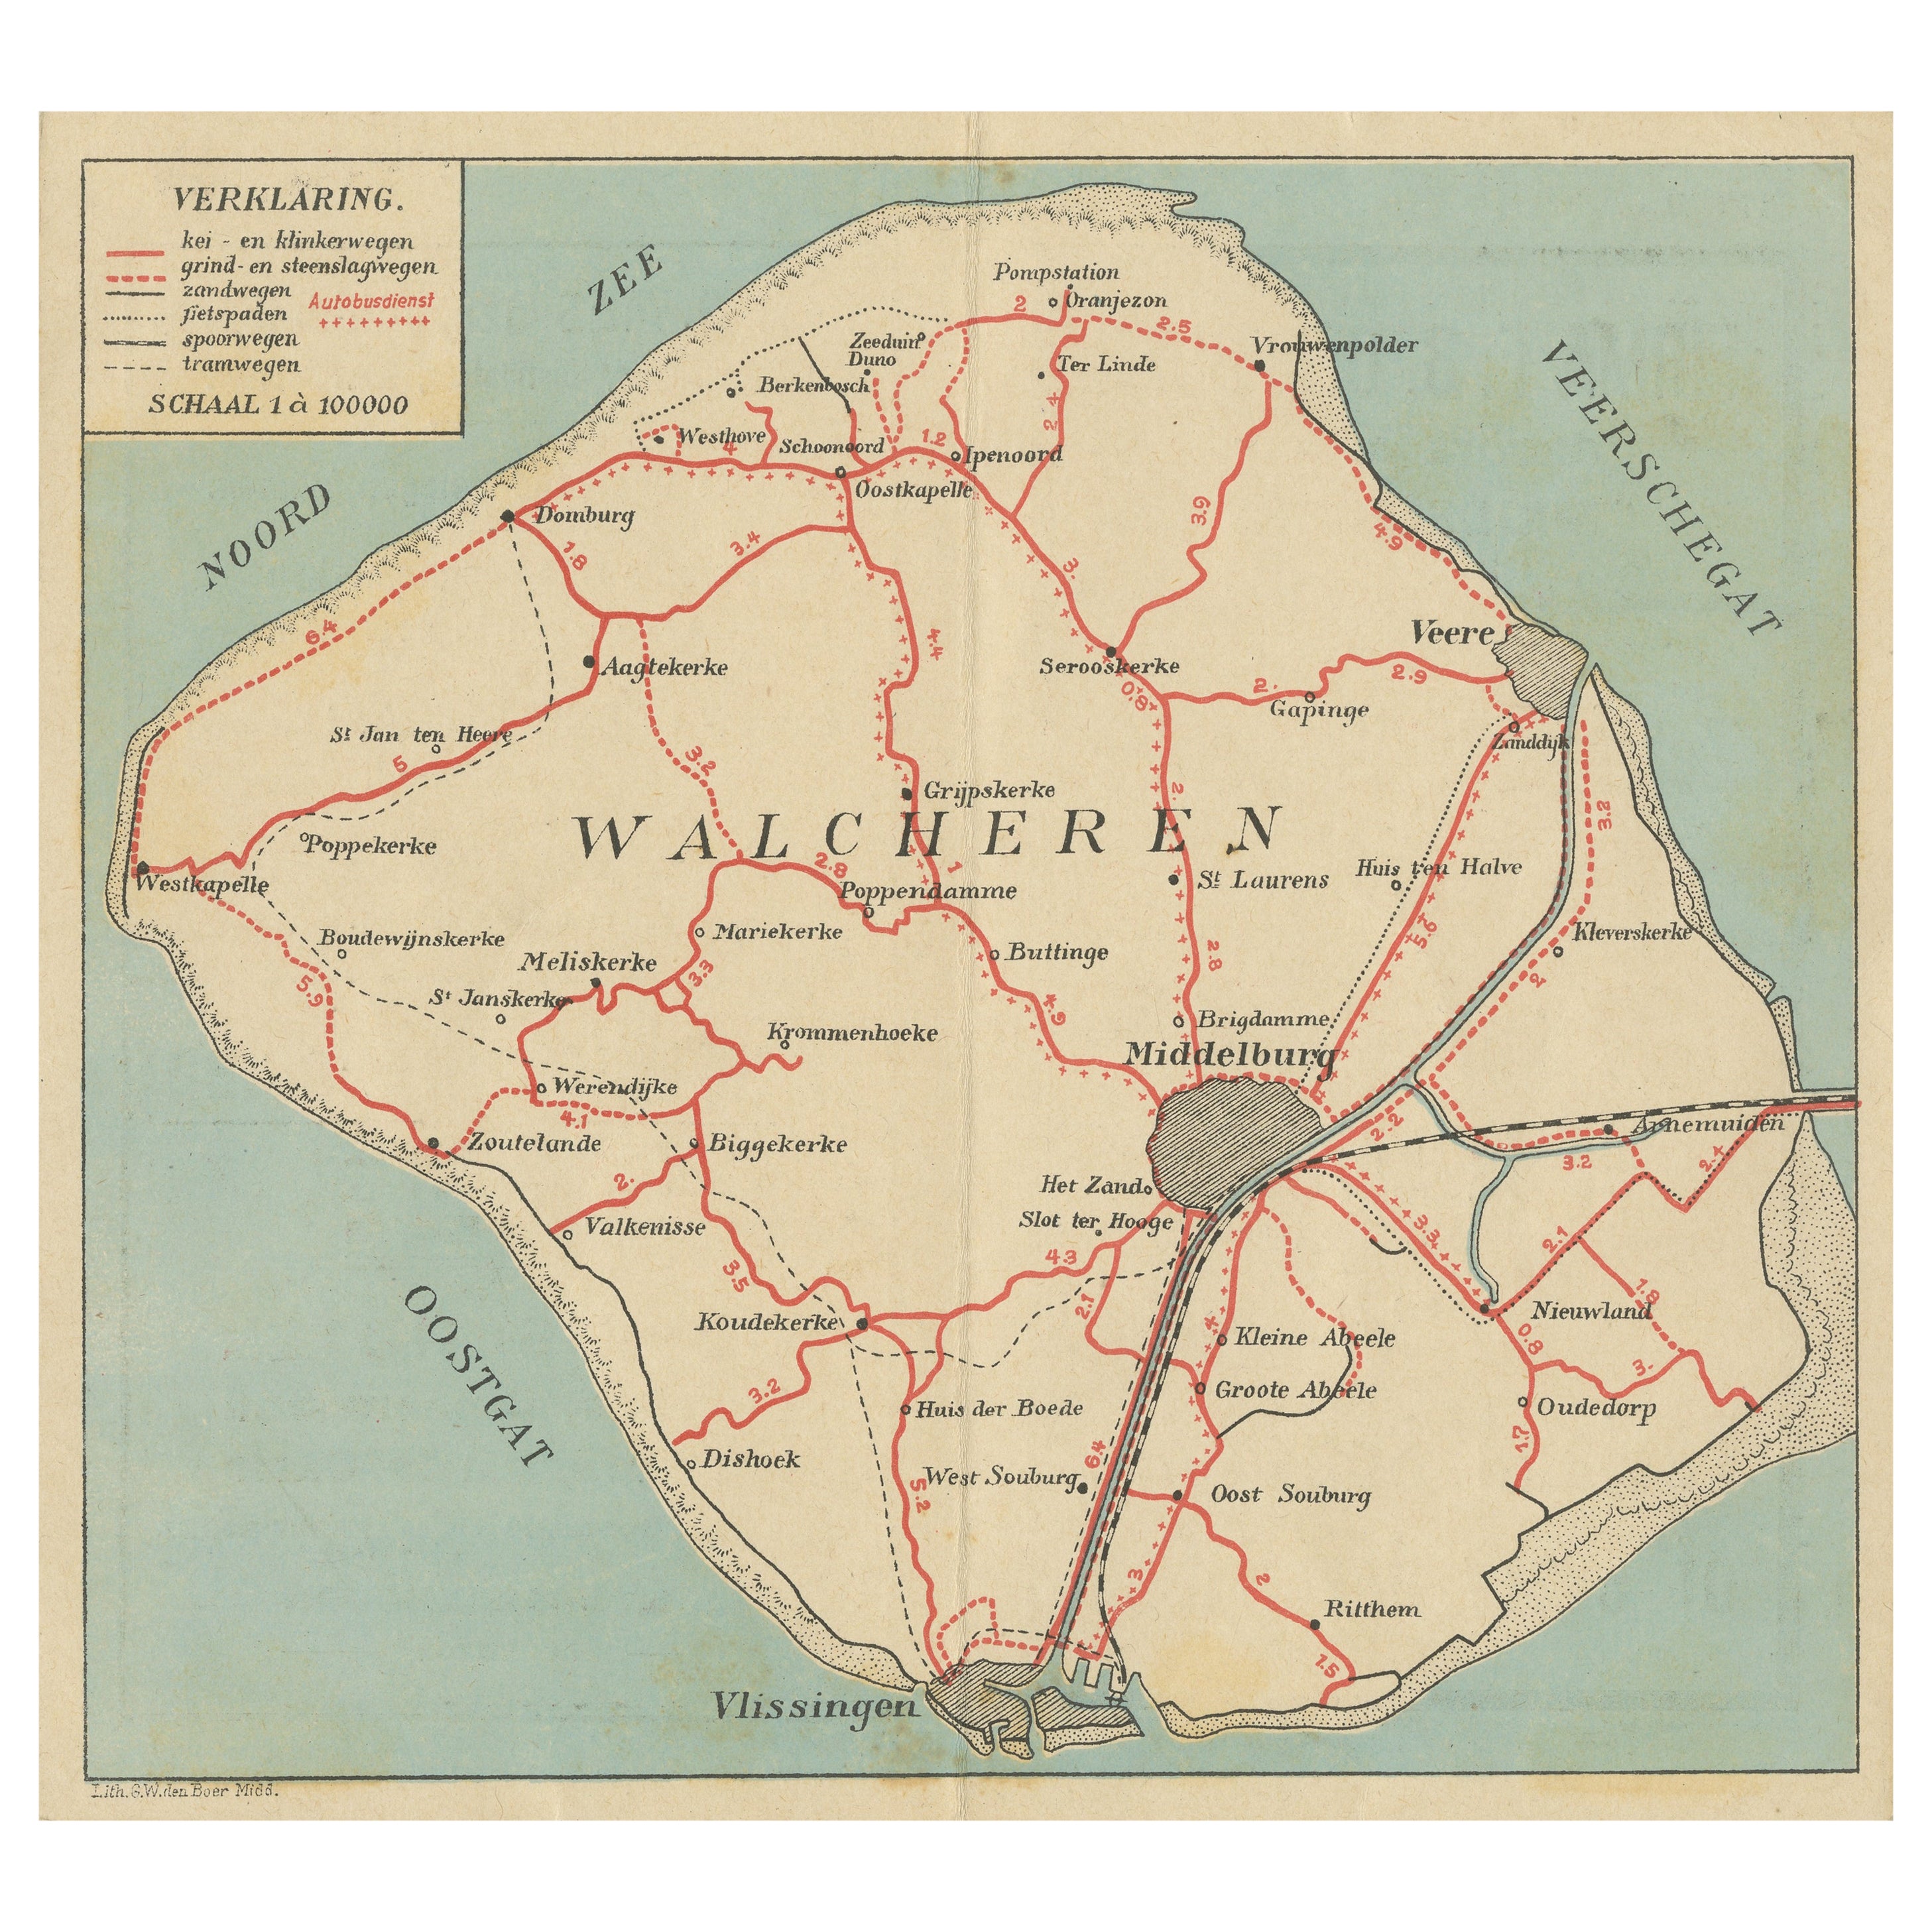 Carte ancienne de Walcheren dans la province de Zélande, aux Pays-Bas, vers 1910